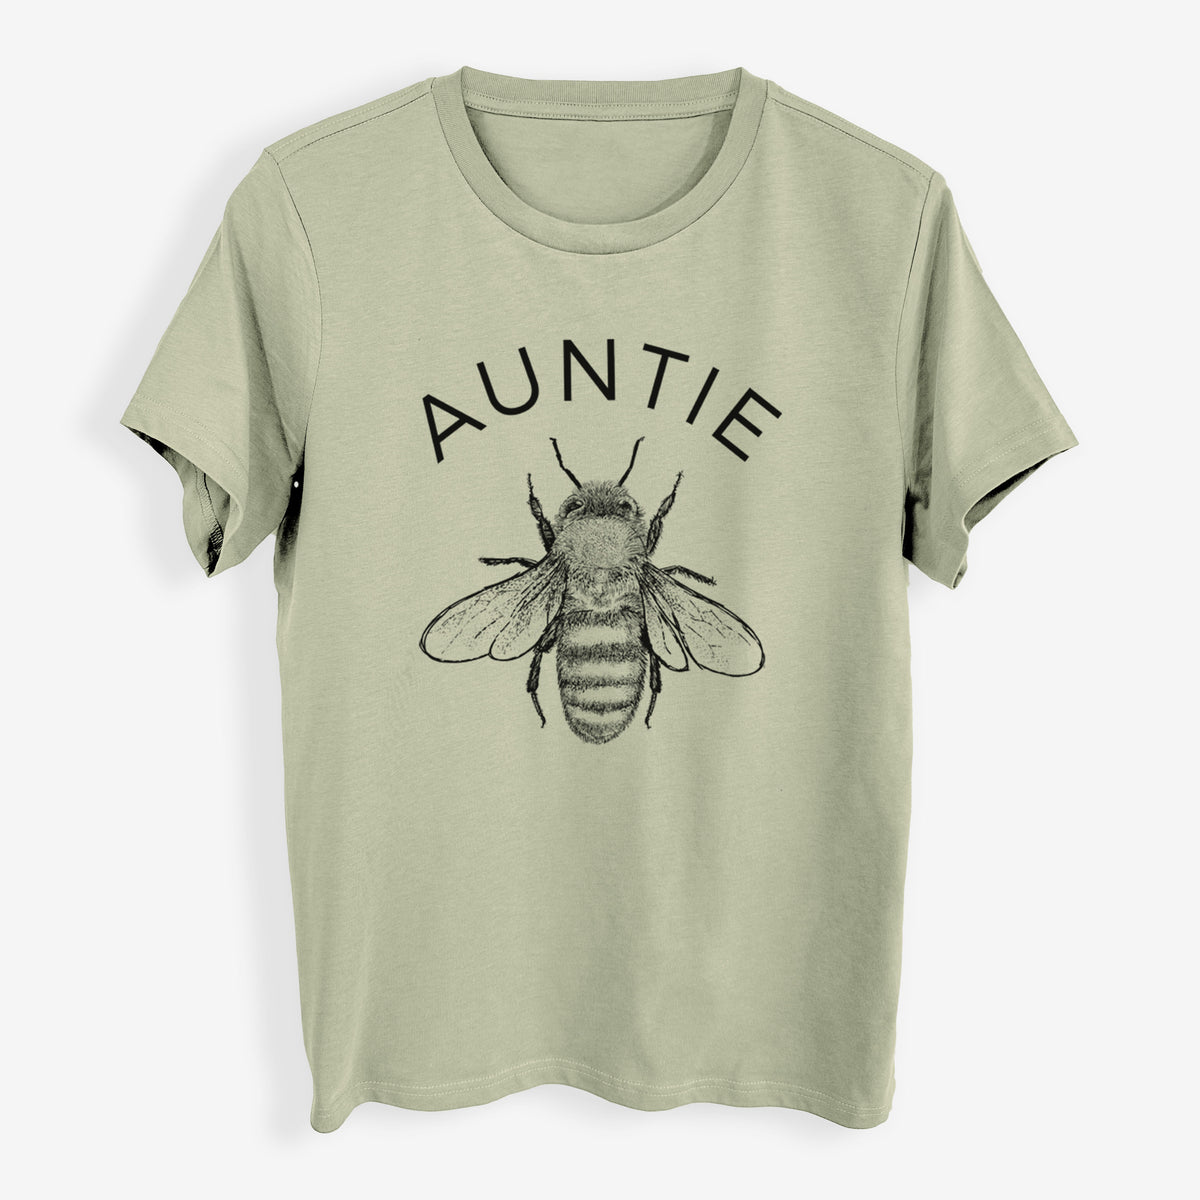 Auntie Bee - Womens Everyday Maple Tee